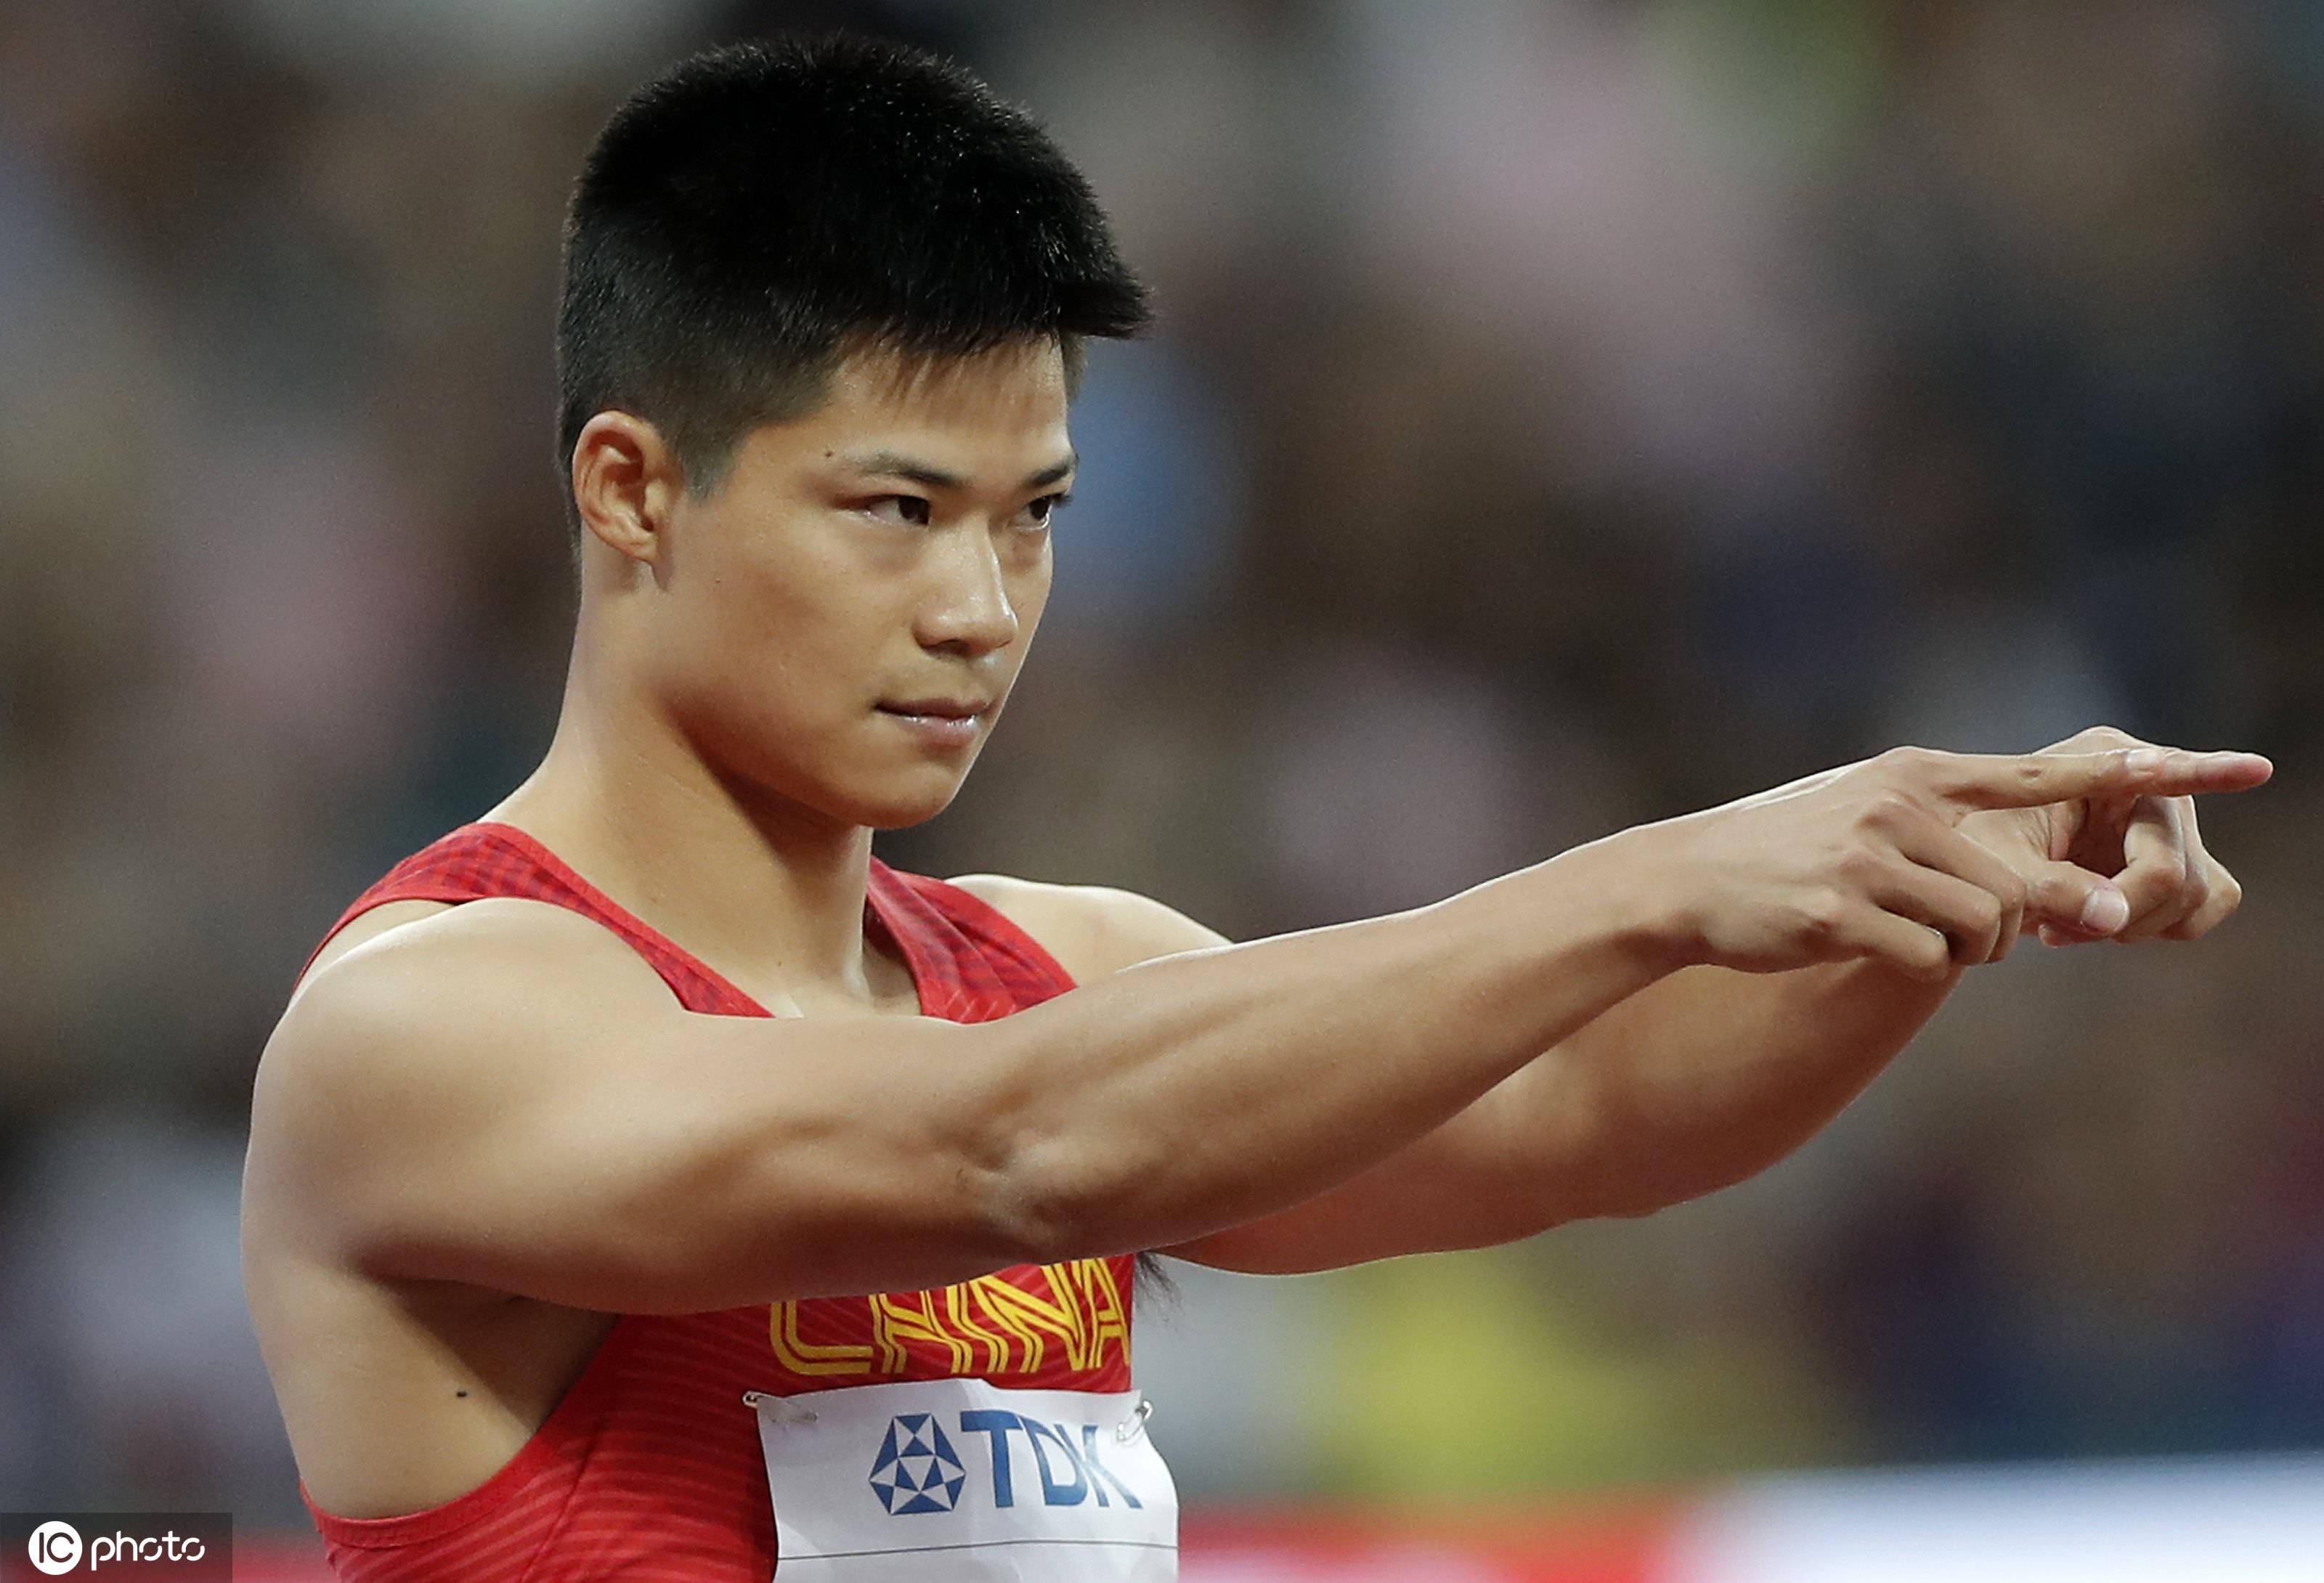 苏炳添刷新中国速度,9秒98排名奥运男子百米